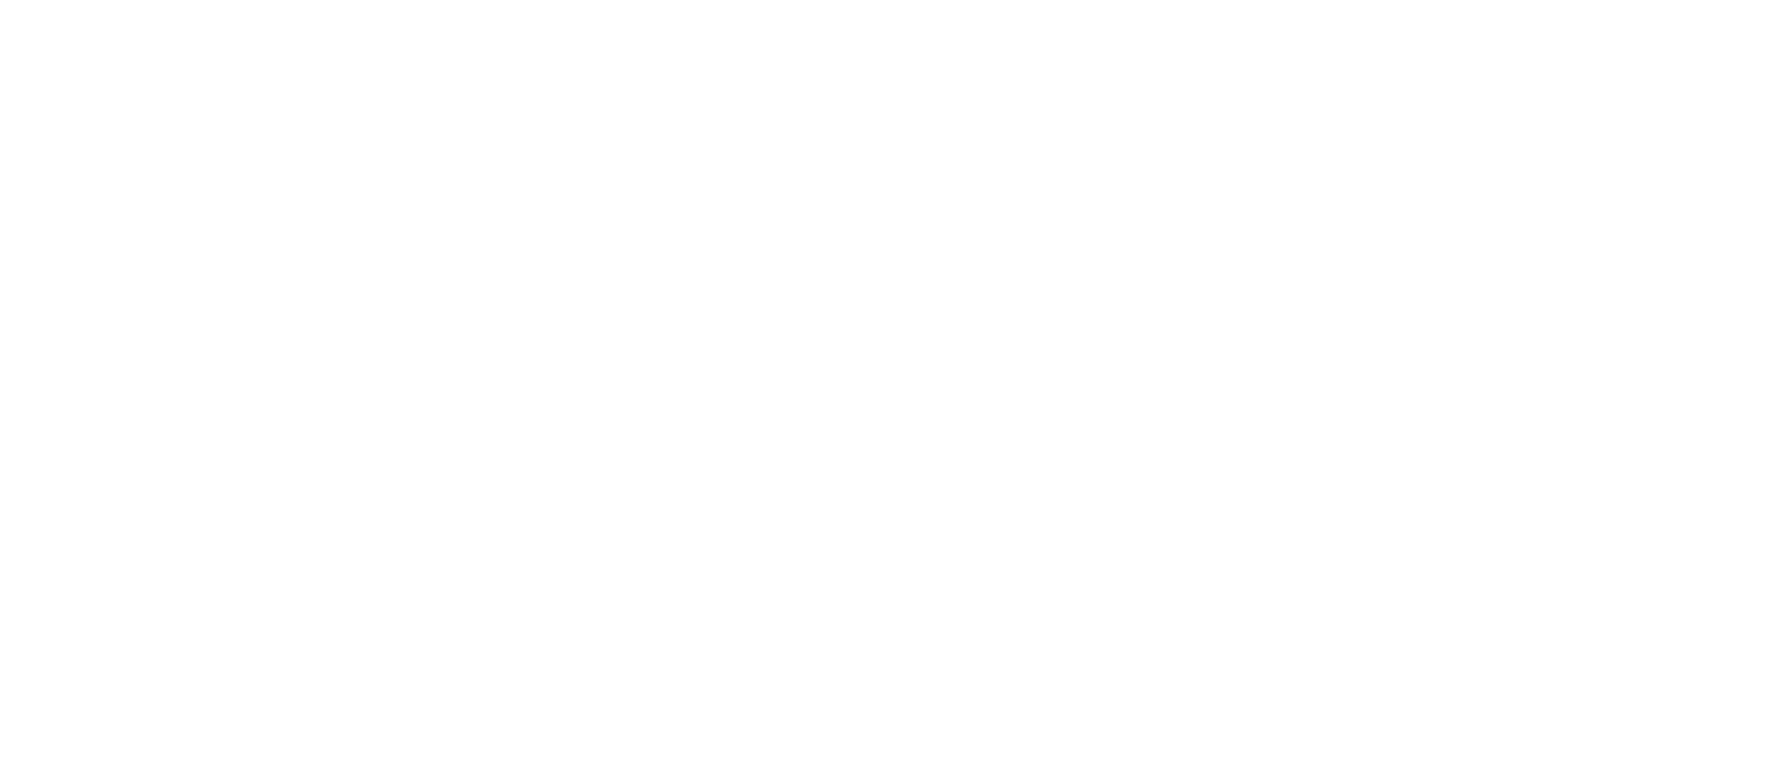 ABOUT US　世界へのトレンド発信を目標に「NyanCo.」はファッションインスタグラマー「D」と広告制作会社「レバーン」の総合プロデュースで誕生しました。